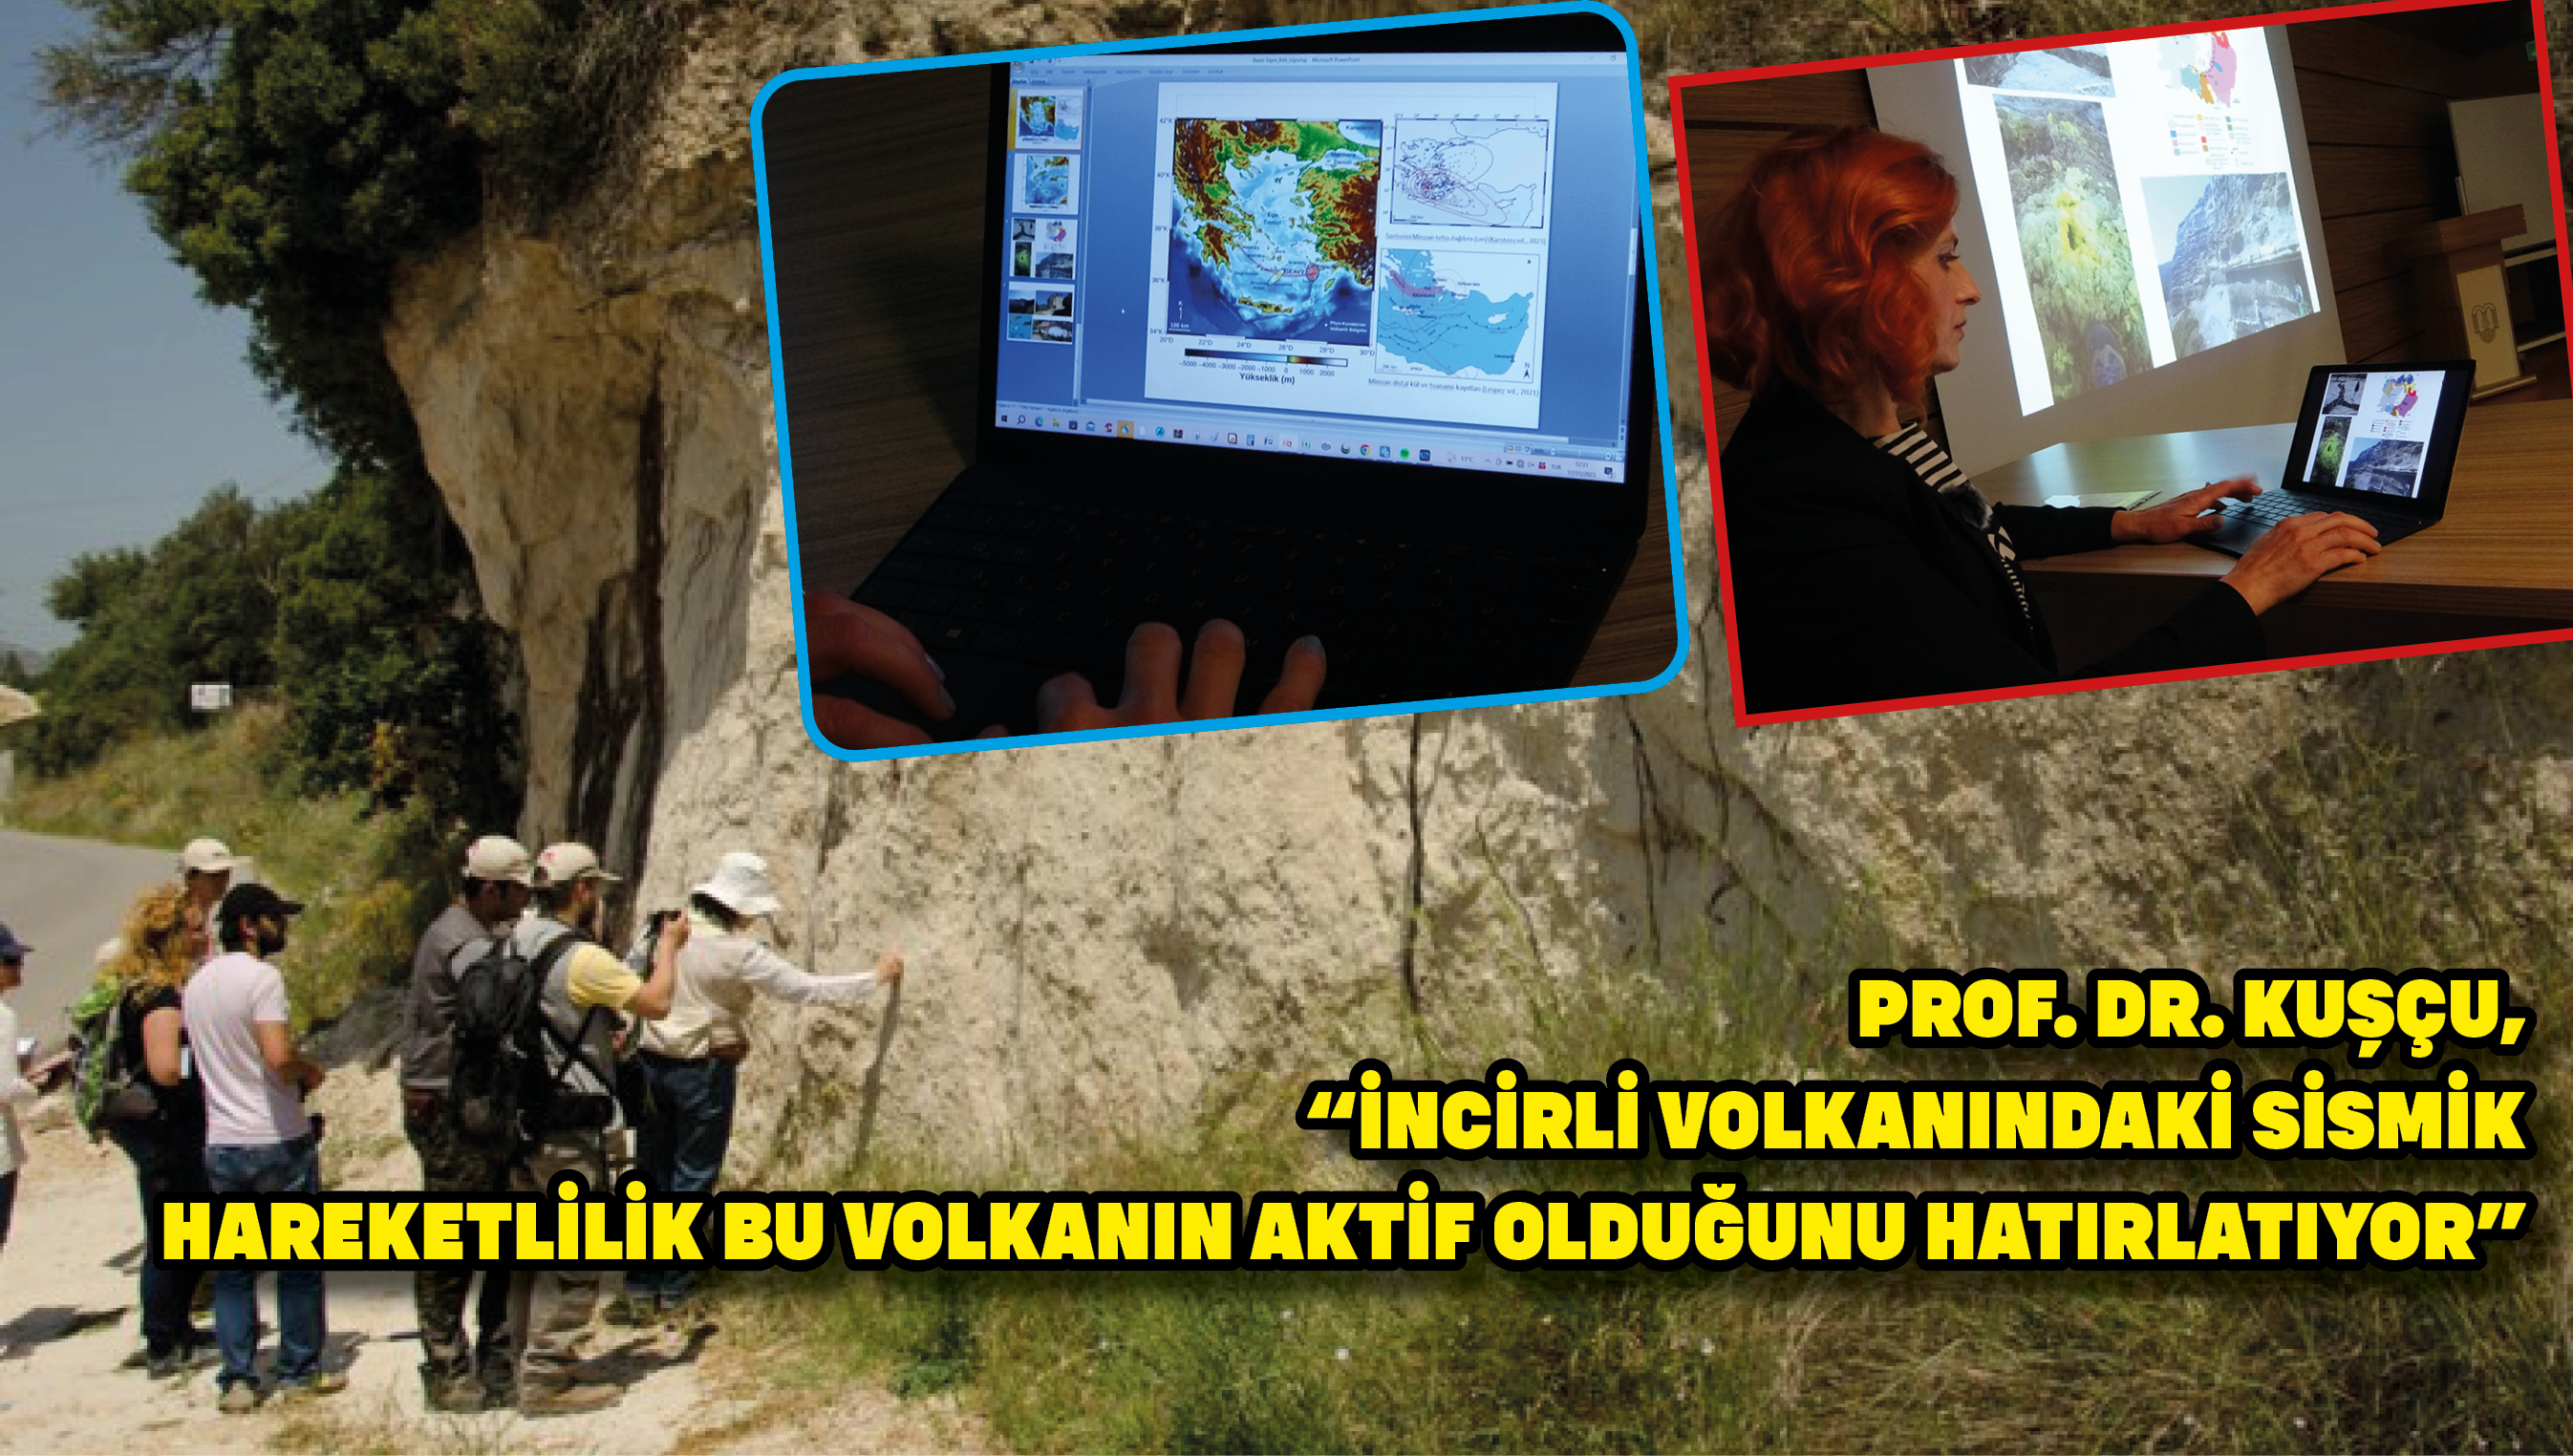 Prof. Dr. Kuşçu, “İncirli Volkanındaki sismik hareketlilik bu volkanın aktif olduğunu hatırlatıyor”